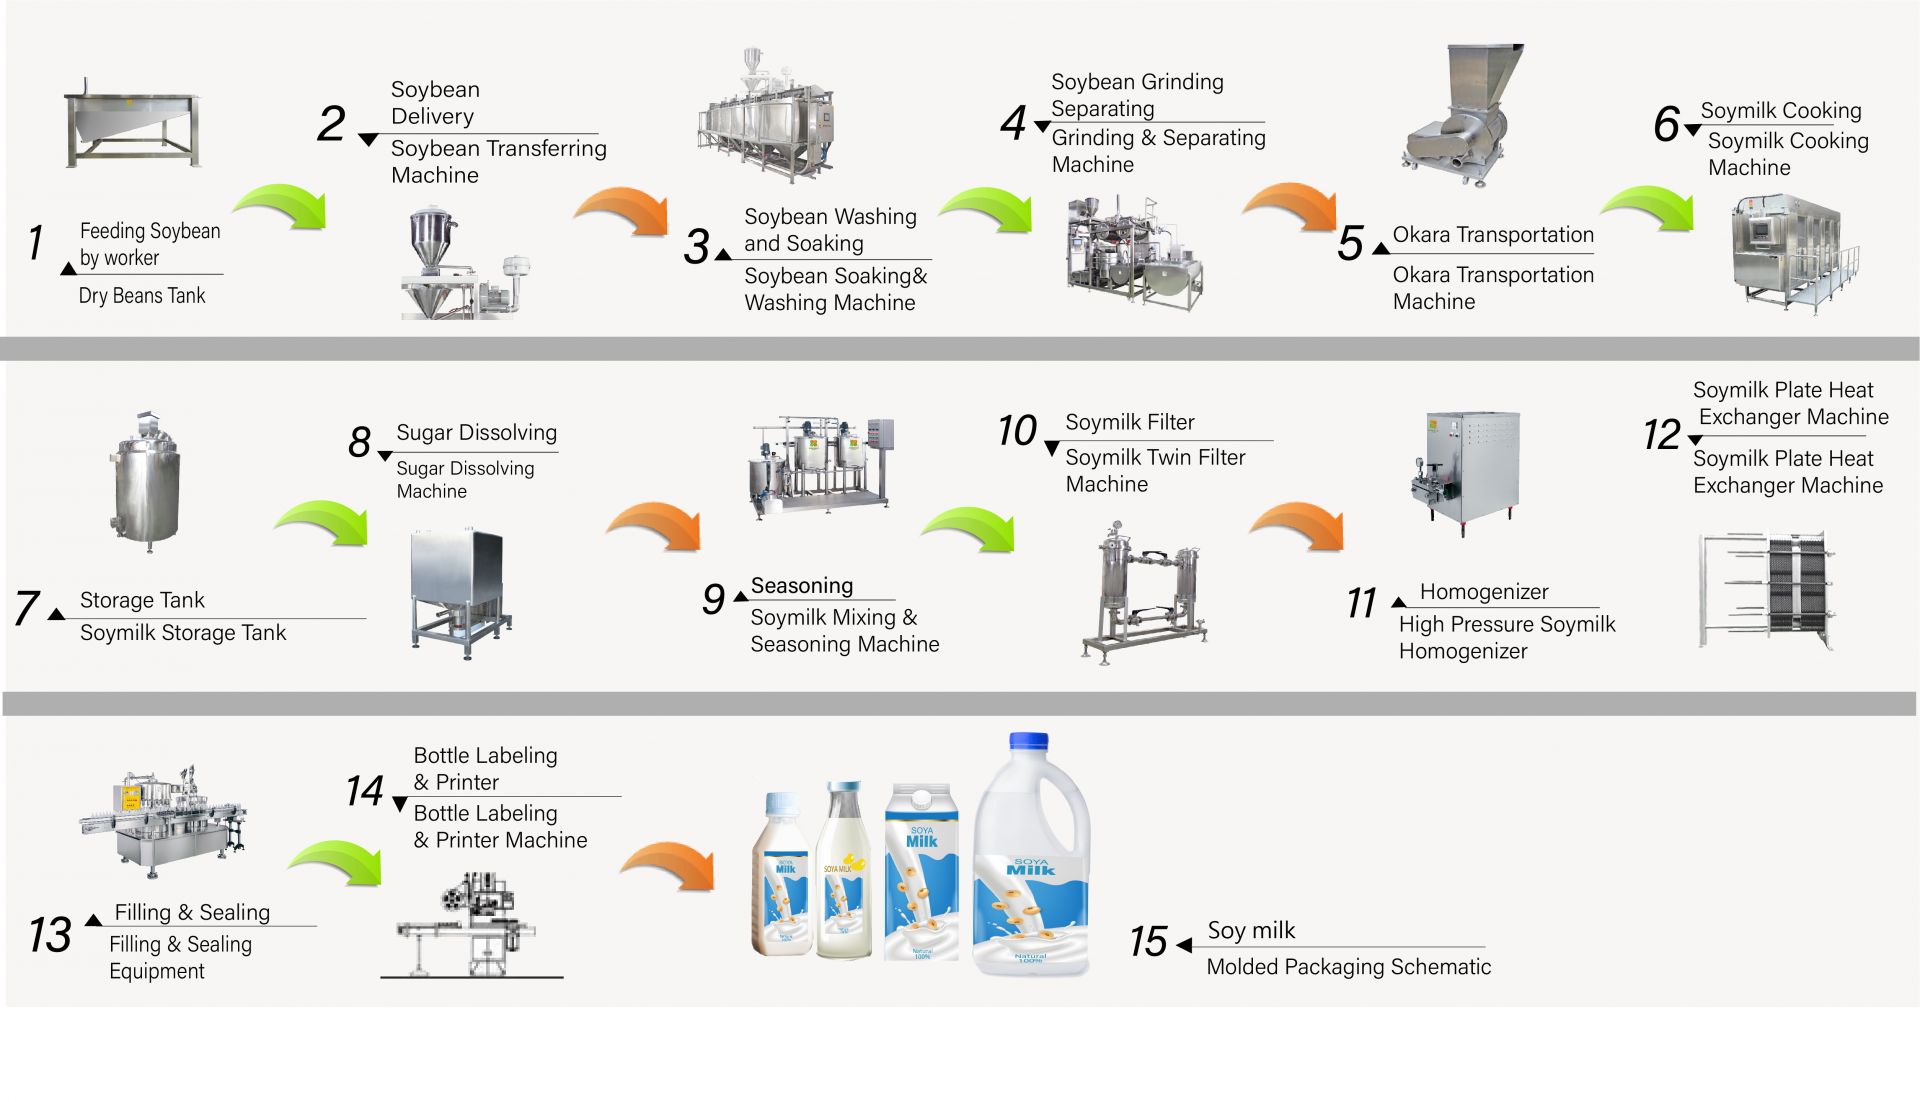 Il processo di produzione del latte di soia in fabbrica, Come fare il latte di soia, Produrre latte di soia, diagramma di flusso del latte di soia, Processo di produzione del latte di soia, processo di produzione del latte di soia, processo del latte di soia, diagramma di flusso del processo del latte di soia, Flusso di lavorazione del latte di soia, Processo di lavorazione del latte di soia, produzione di latte di soia, diagramma di flusso della produzione di latte di soia, processo di produzione di latte di soia, diagramma di flusso della lavorazione della soia, Macchina automatica per latte di soia, Macchina automatica per la produzione di latte di soia, Easy Tofu Maker, Produzione industriale di latte di soia, Produzione industriale di latte di soia, Macchina industriale per latte di soia, Macchina industriale per il tofu, macchina per il latte vegetale, macchina per la produzione di latte vegetale, produzione di latte di soia, Macchina per bevande a base di soia, Linea di produzione di bevande a base di soia, Macchina per bevande a base di soia, macchina commerciale per la produzione di latte di soia, macchina per la produzione di latte di soia e tofu, macchinario e attrezzature per bevande a base di latte di soia, Macchina per cucinare il latte di soia, fabbrica di latte di soia, macchina per latte di soia, macchina per latte di soia commerciale, Macchina per latte di soia made in Taiwan, Macchinari per latte di soia, Macchinari e attrezzature per latte di soia, Fornitore di latte di soia, Macchina per fare il latte di soia, Produttori di latte di soia, Produzione di latte di soia, attrezzature per la produzione di latte di soia, fabbrica di produzione di latte di soia, linea di produzione di latte di soia, prezzo della macchina per la produzione di latte di soia, macchina per la lavorazione della soia, fabbrica di latte di soia, macchina per la produzione di latte di soia